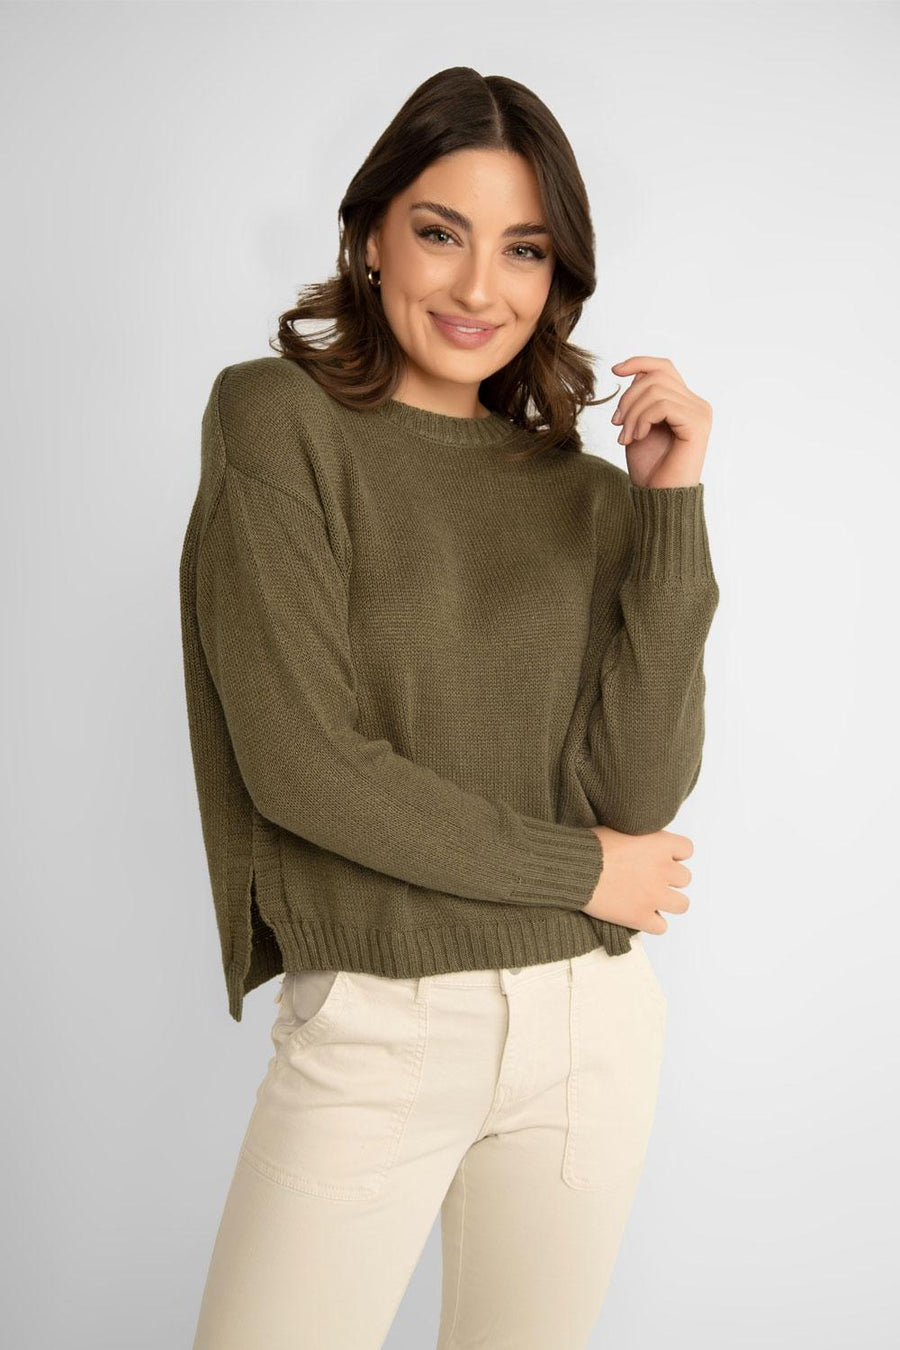 REN6841 Knit Sweater W/Side Slits